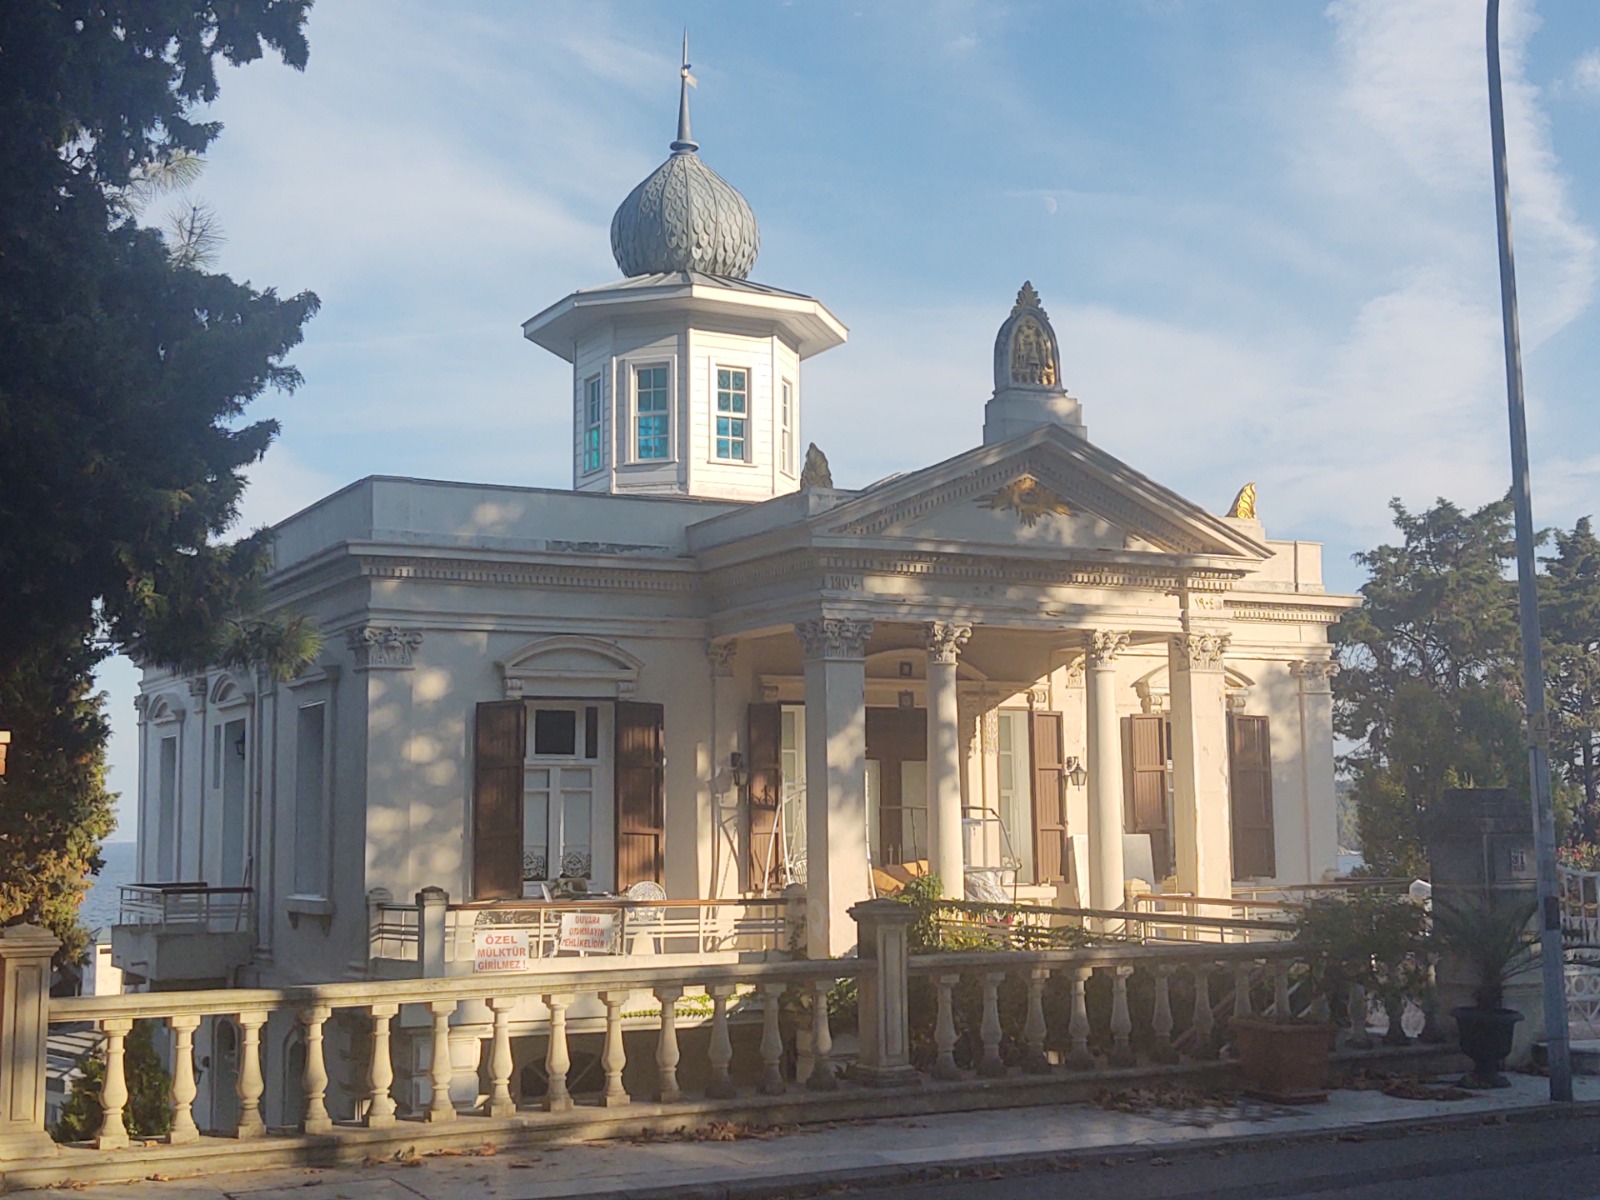 Дом греческой семьи Сабунджакис, который известен как дом масонов. Служил местом летних сессий братства guidego.ru